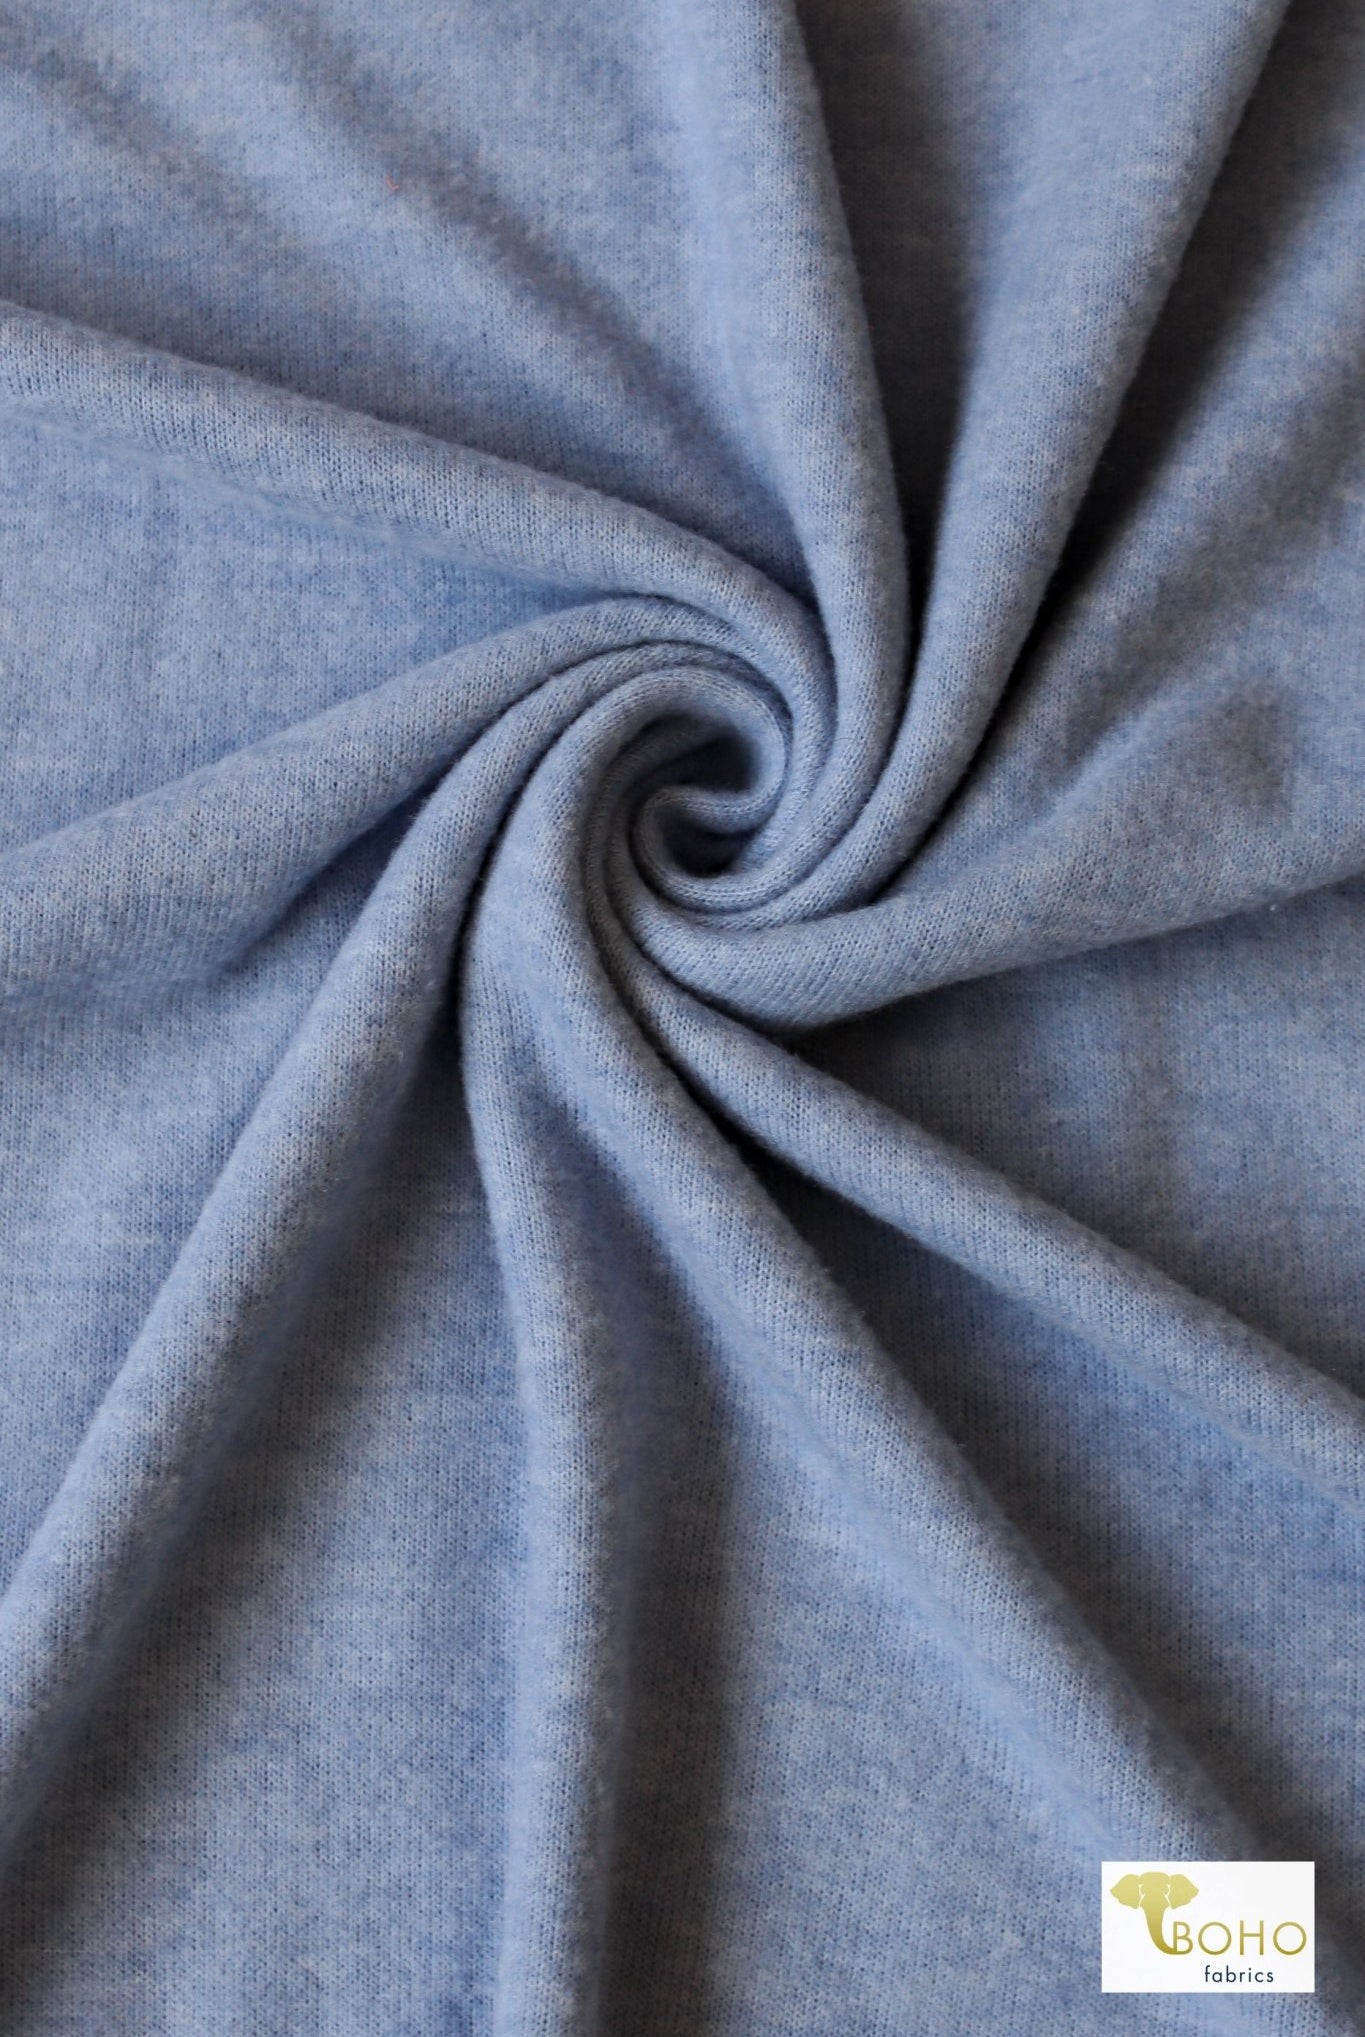 Serenity Blue, Brushed Sweater Knit - Boho Fabrics